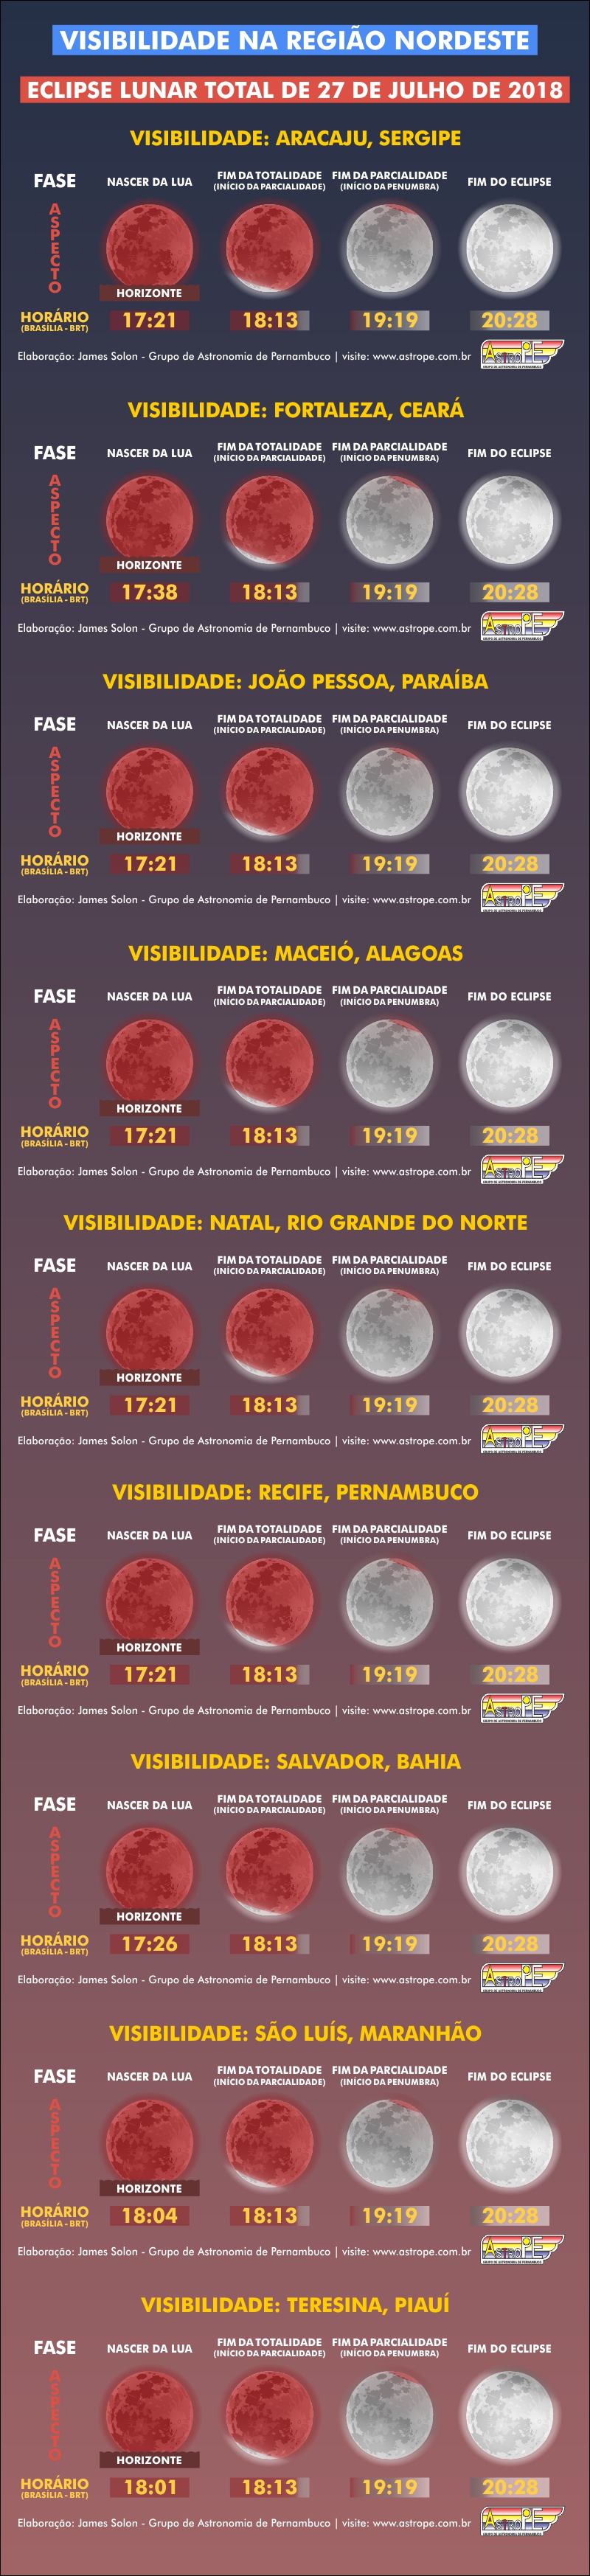 Horários e visibilidade do Eclipse Lunar Total de 27 de julho de 2018 na Região Nordeste do Brasil. Crédito: AstroPE.